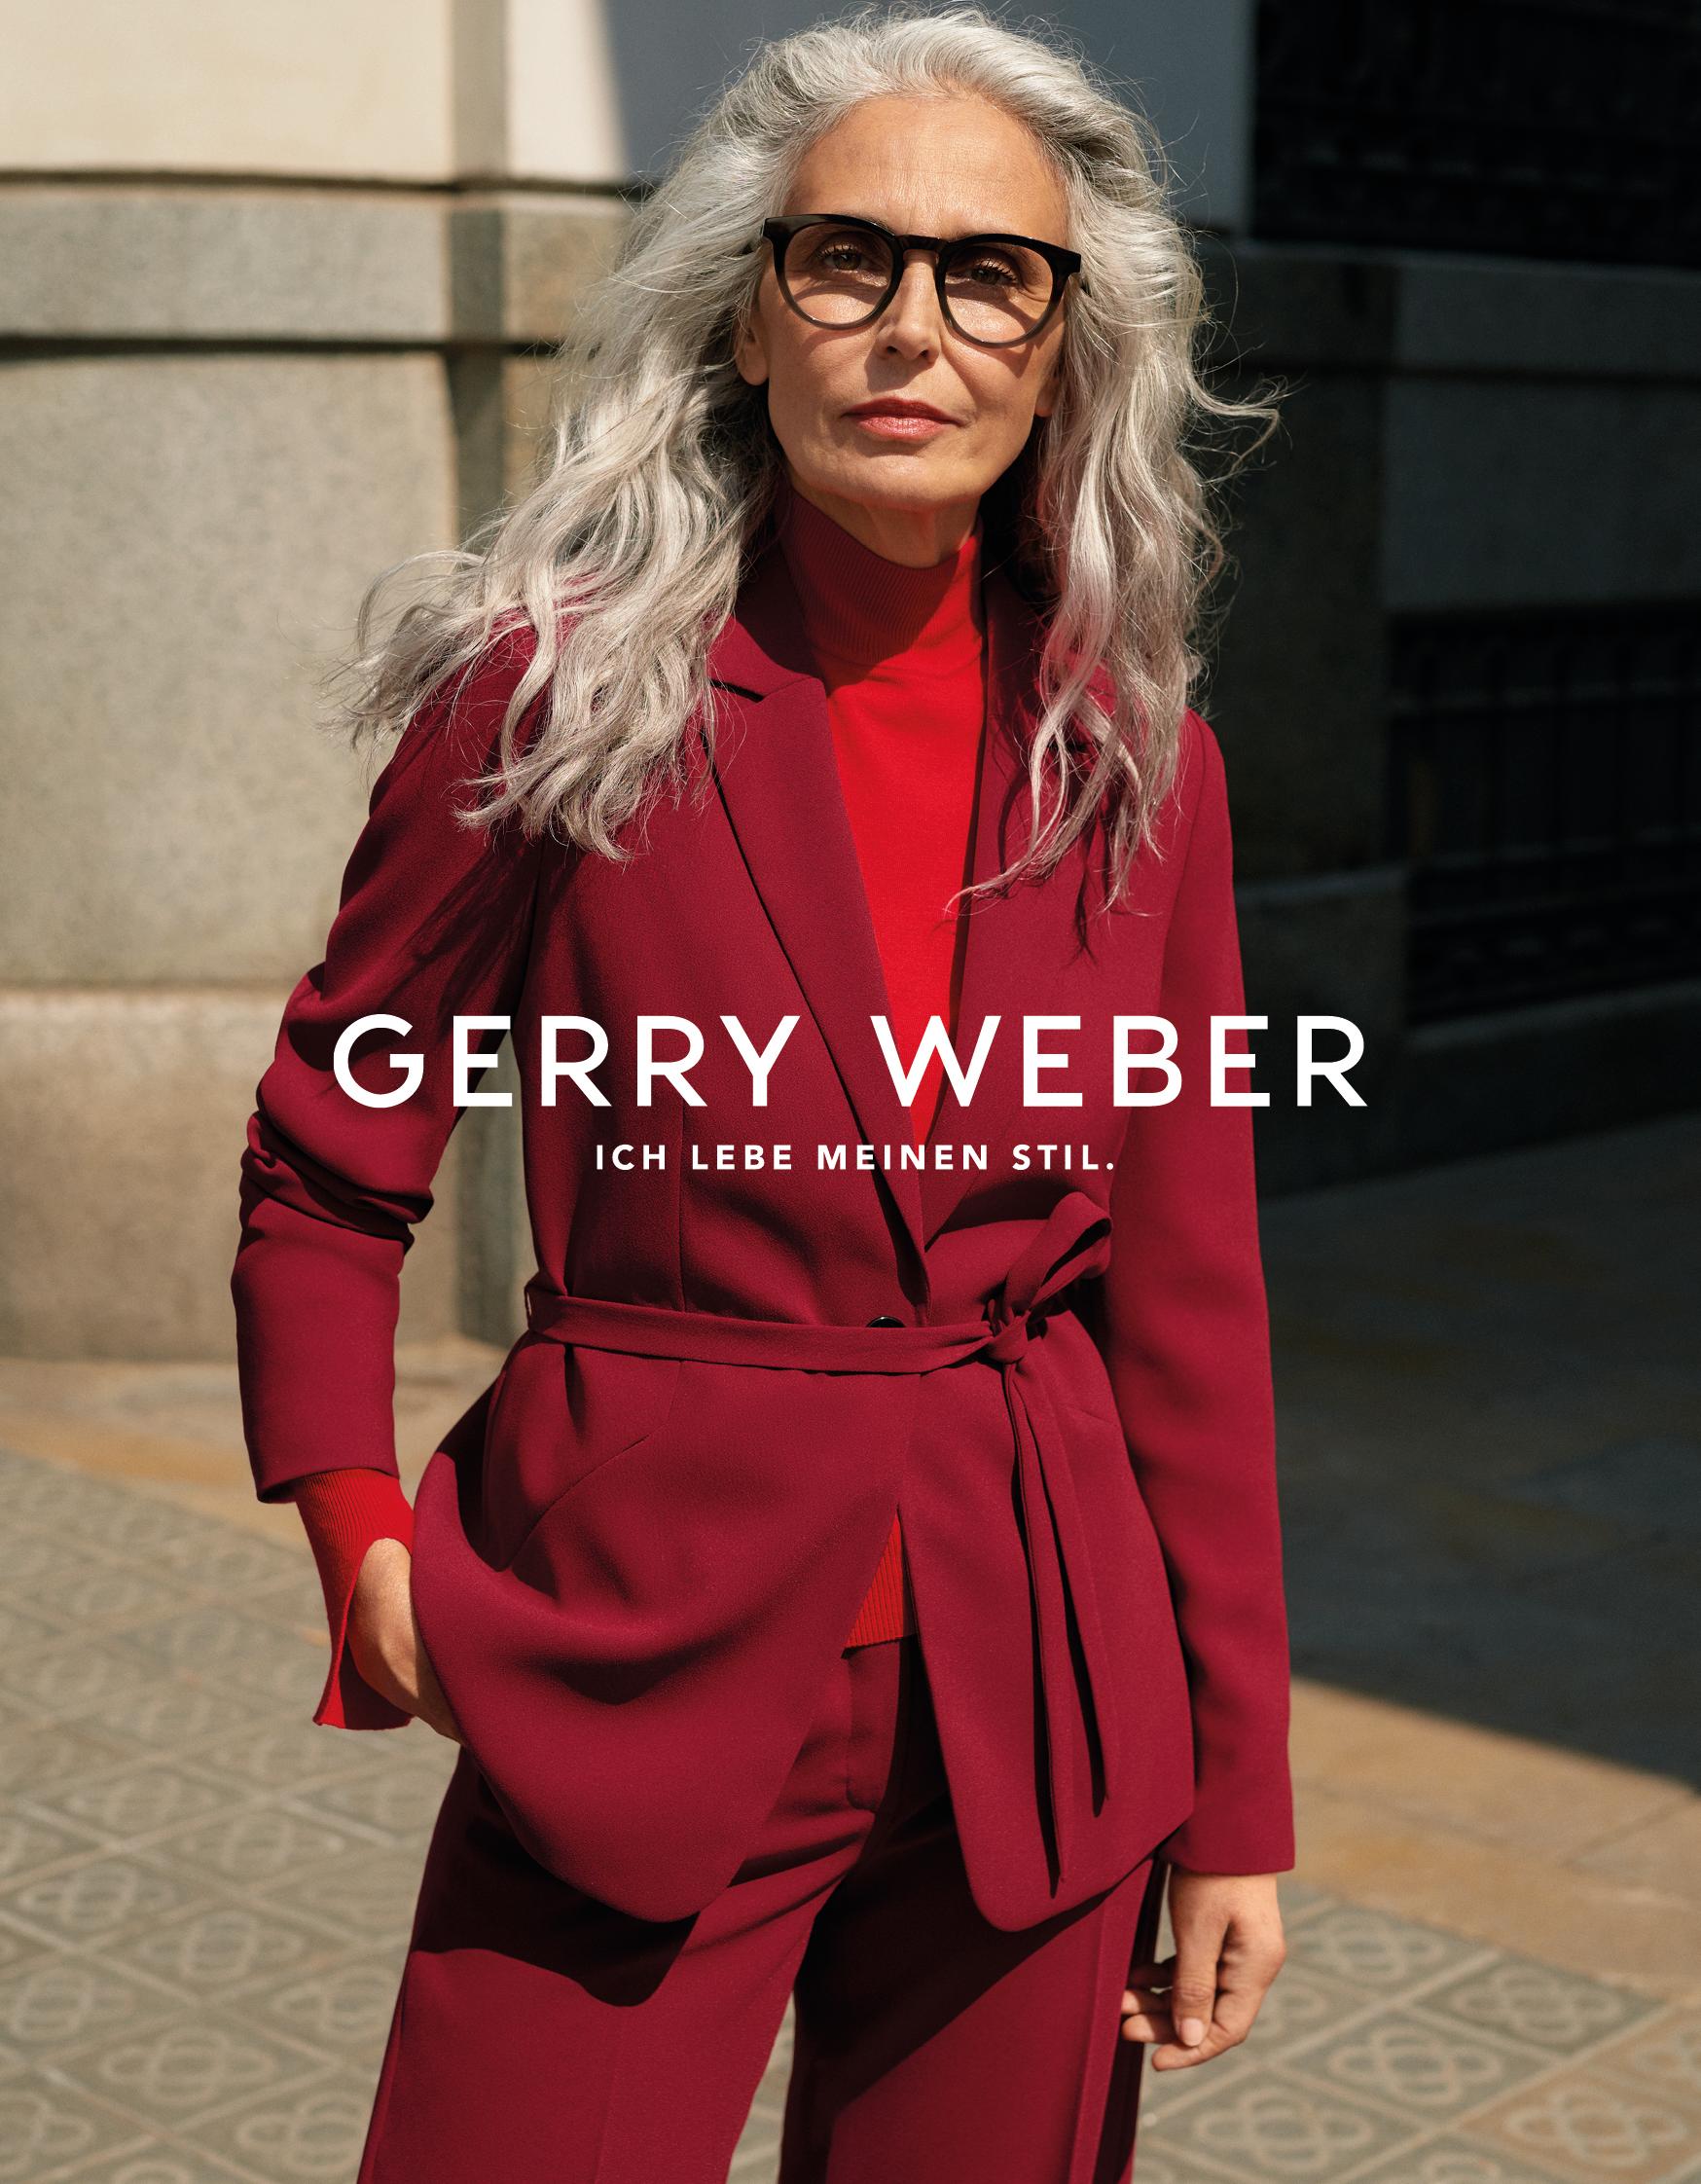 Gerry Weber wirbt erstmalig mit Best-Ager-Model